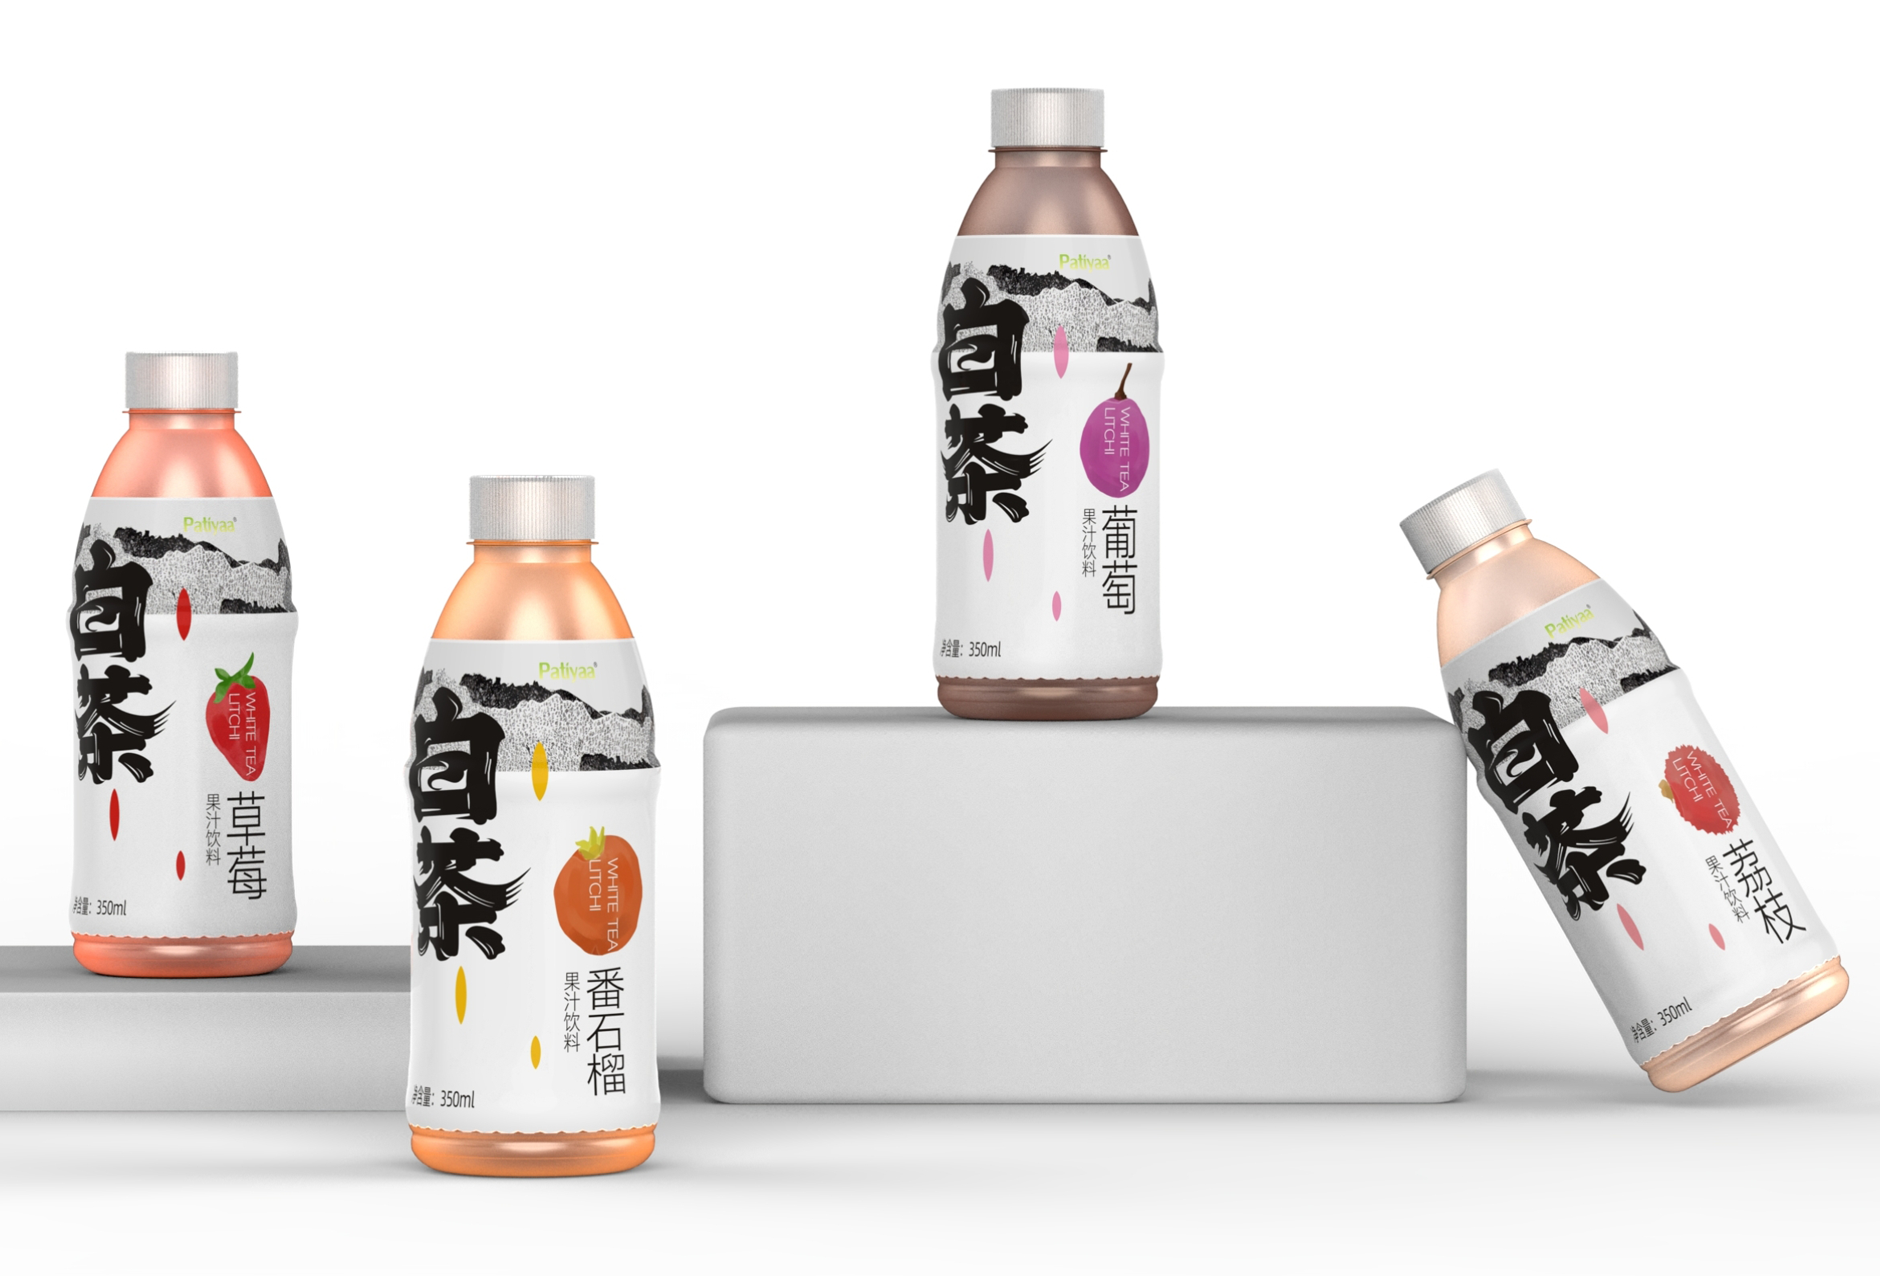 饮料包装设计显示产品的风格与身份